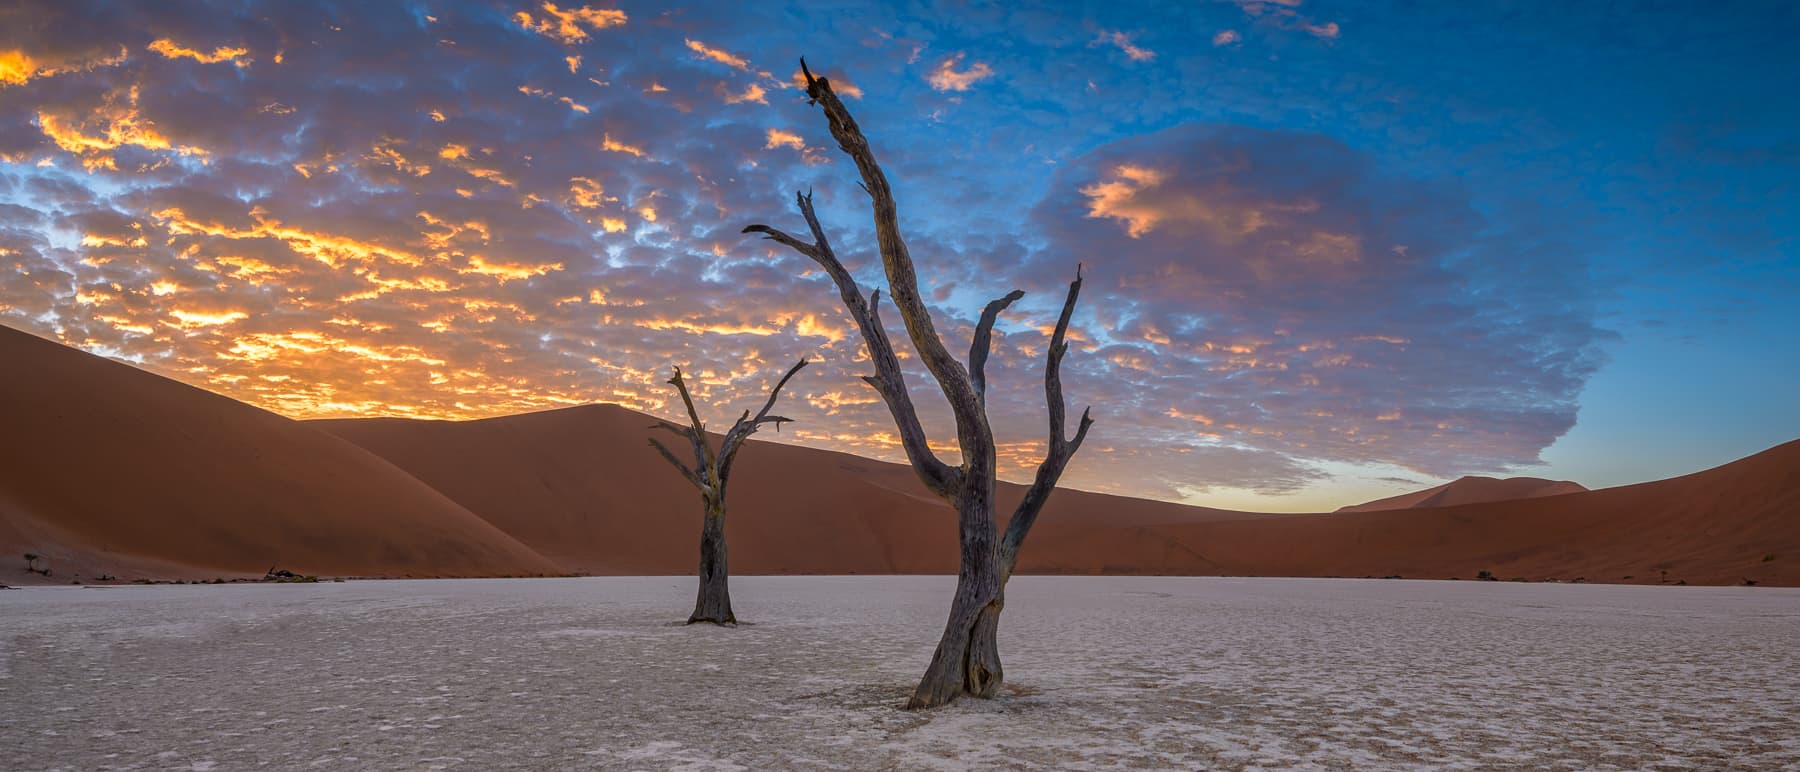 Desert Ladscape at Sunset by Emil von Maltitz